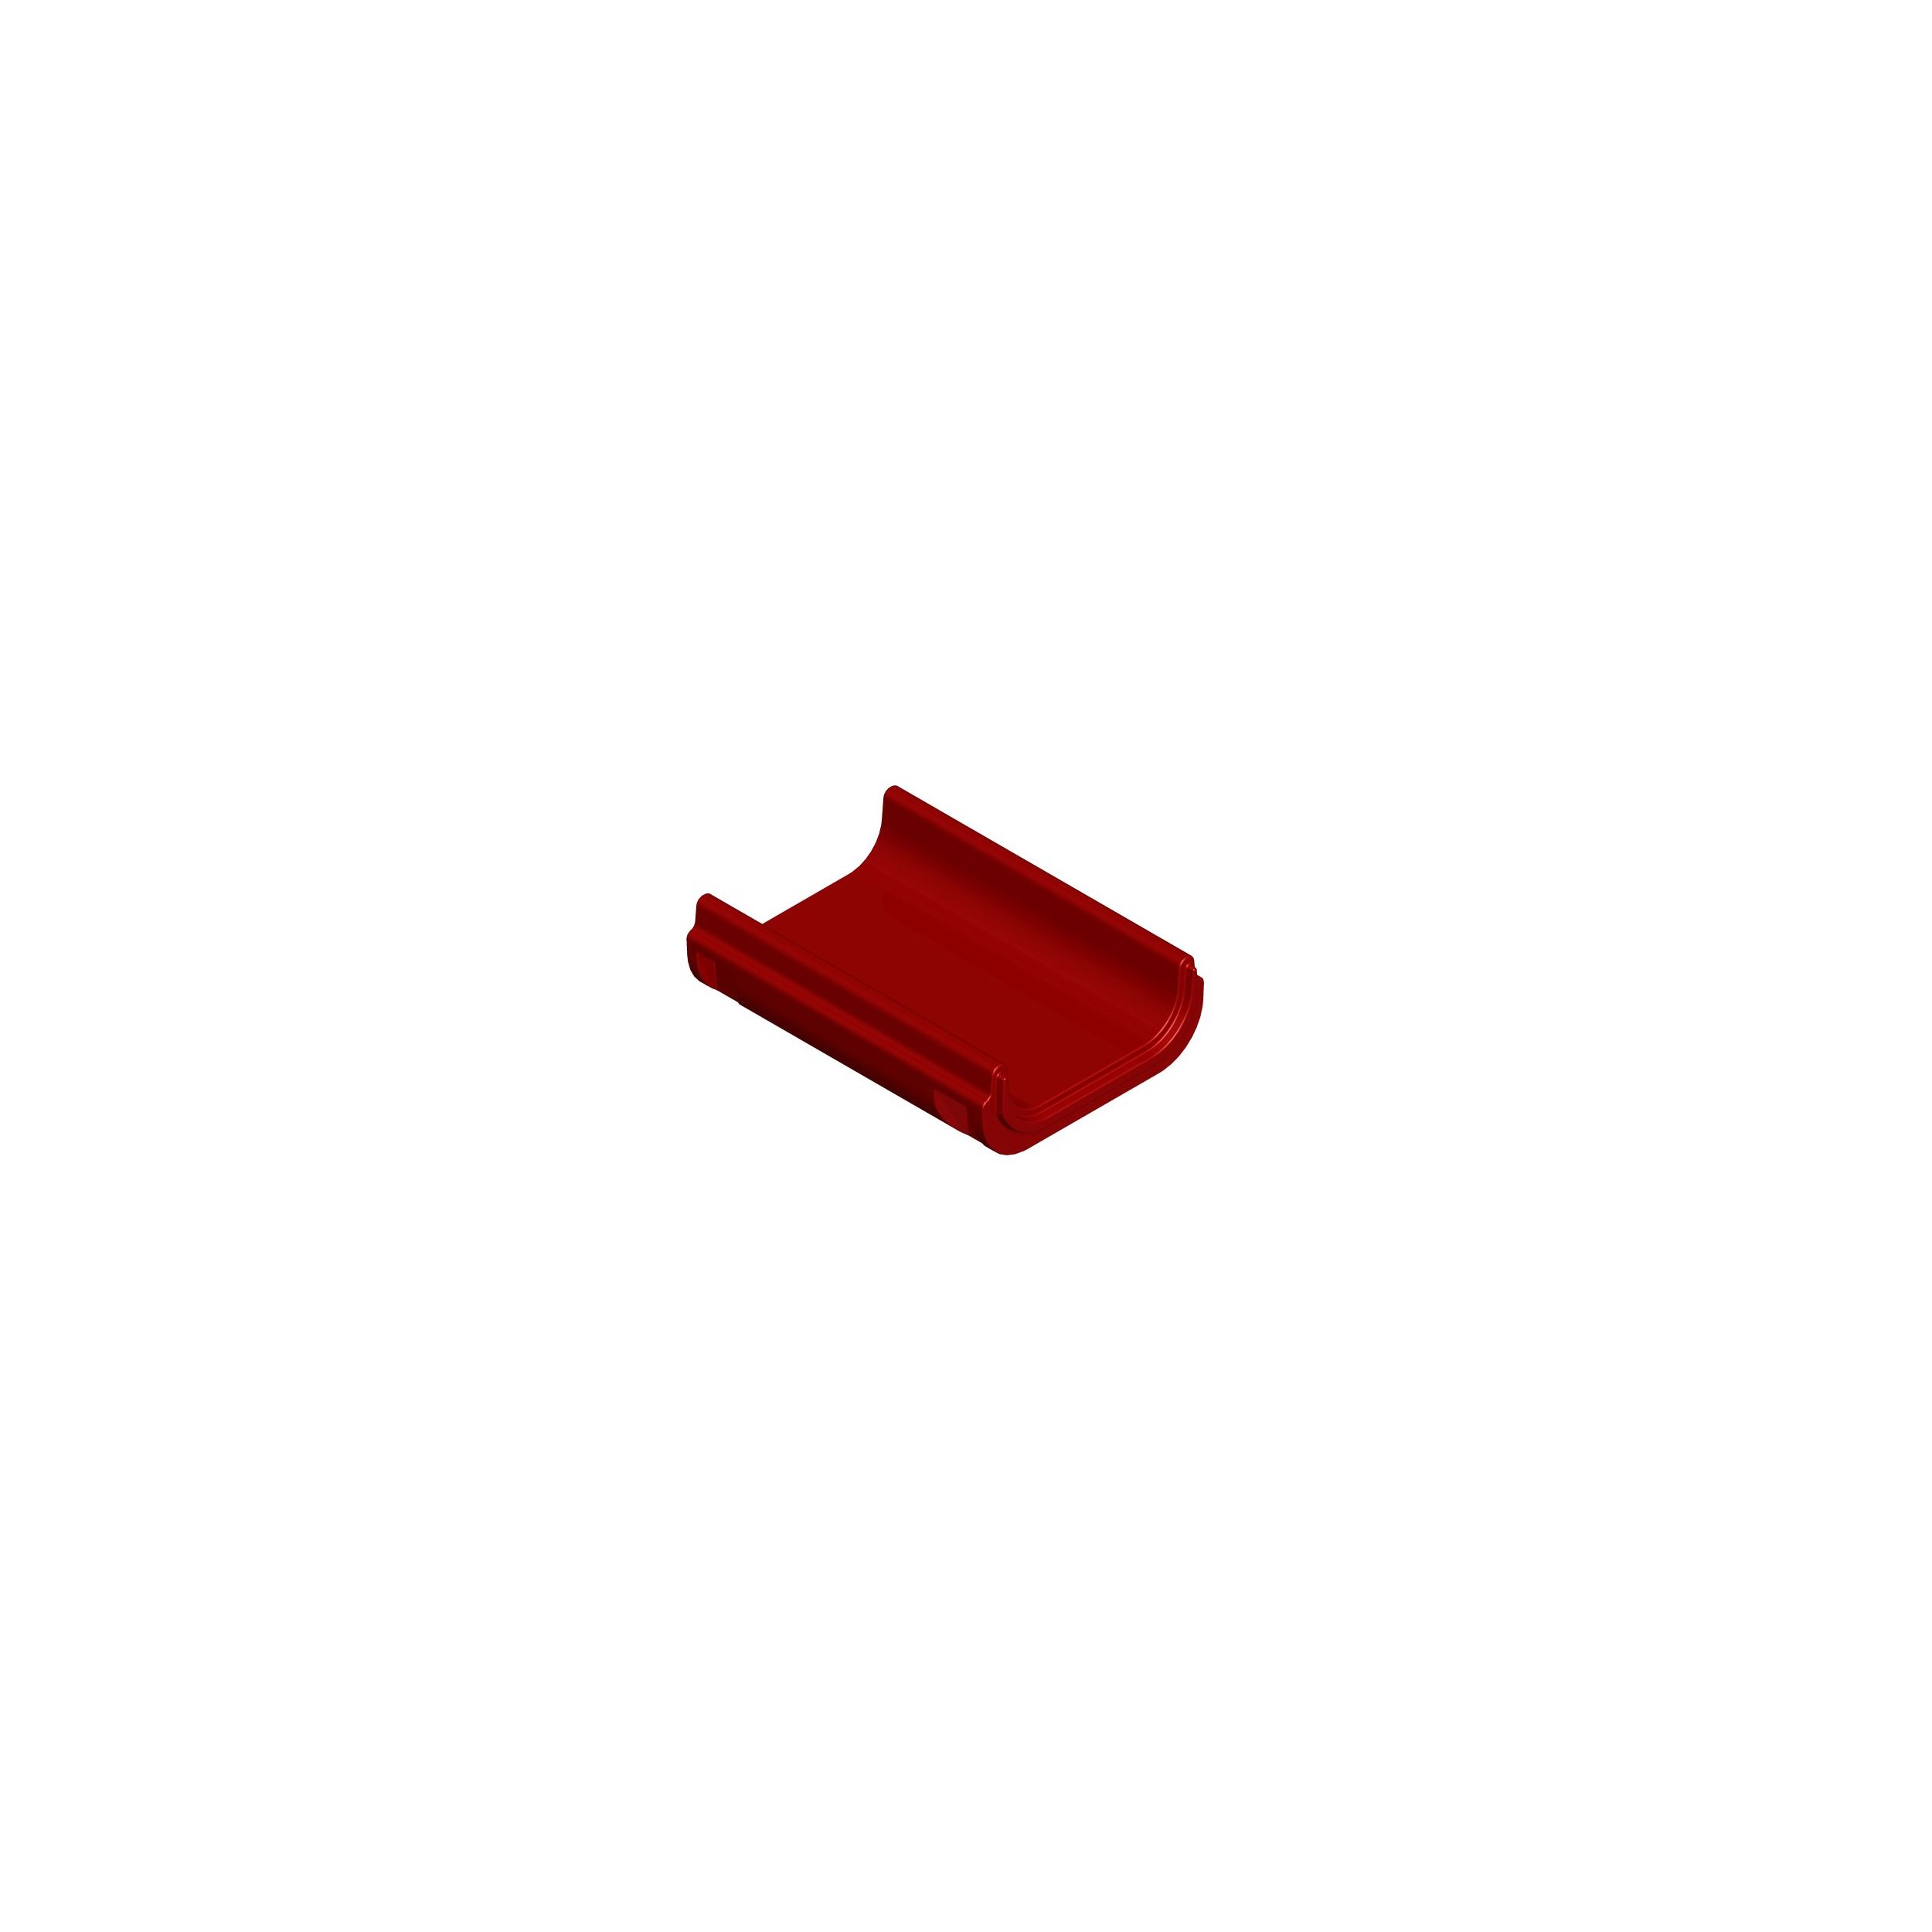 Modul für Hangrutsche - Mittelteil - Länge 106 cm rot